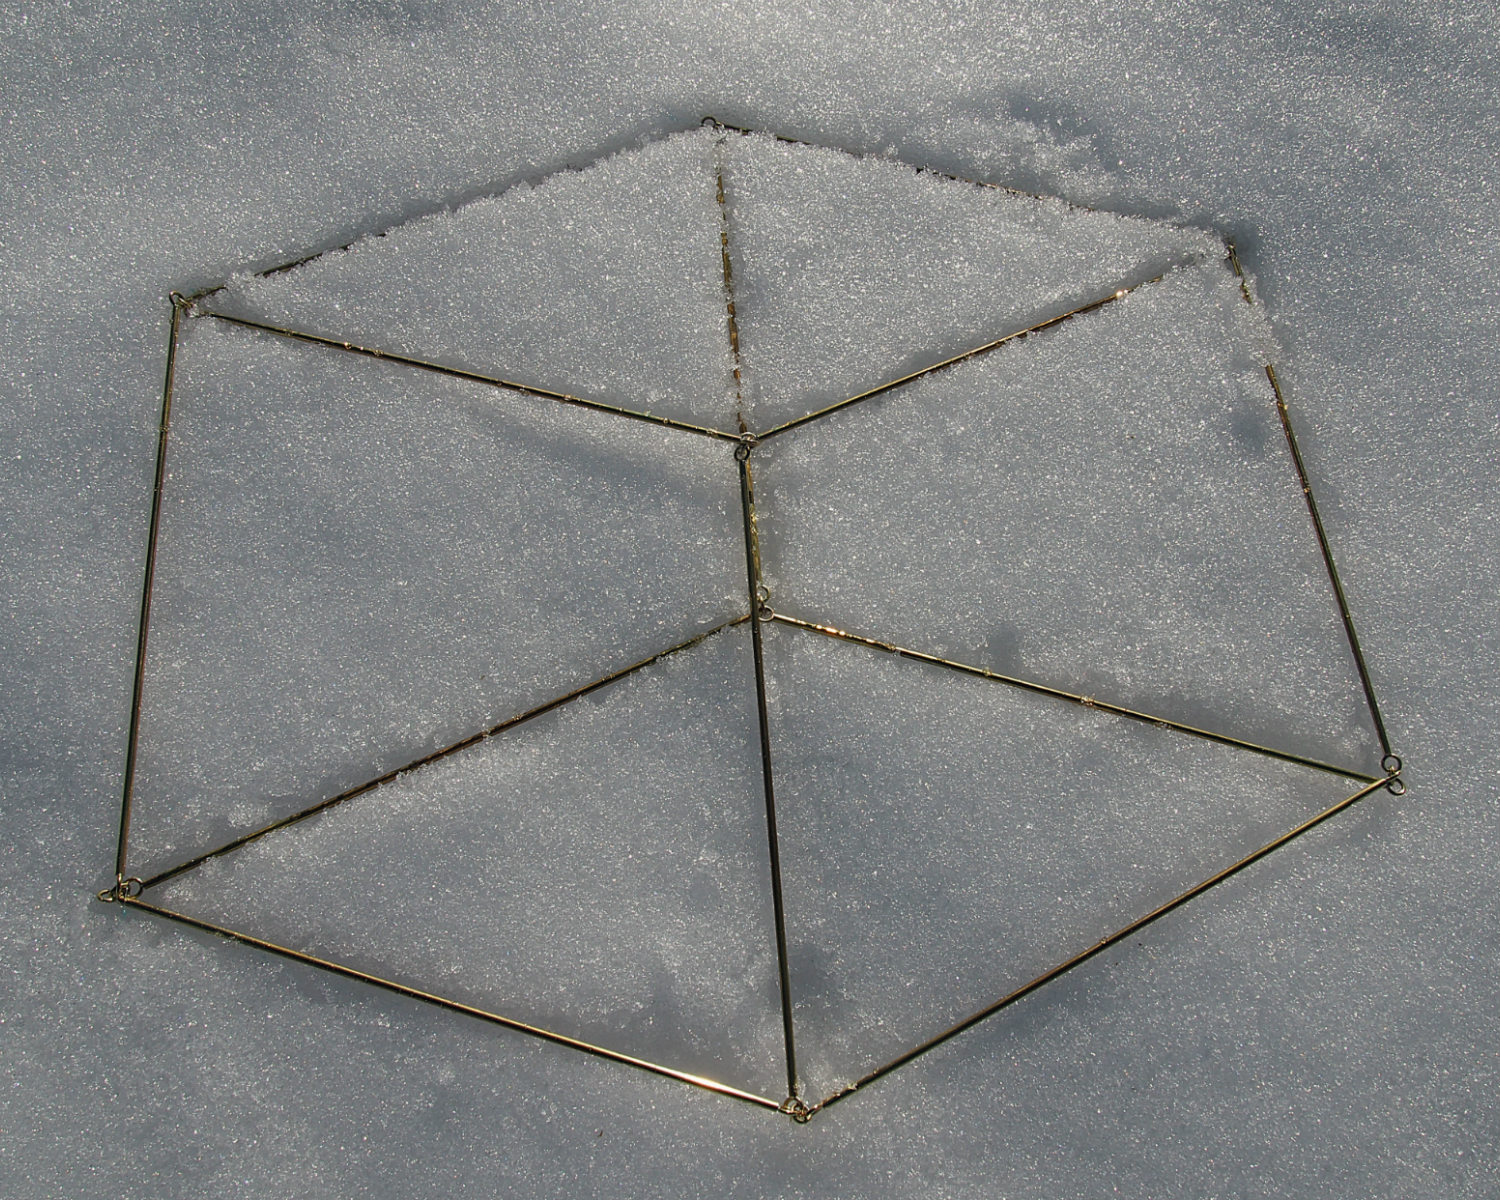 aerial-cube-in-snow.jpg